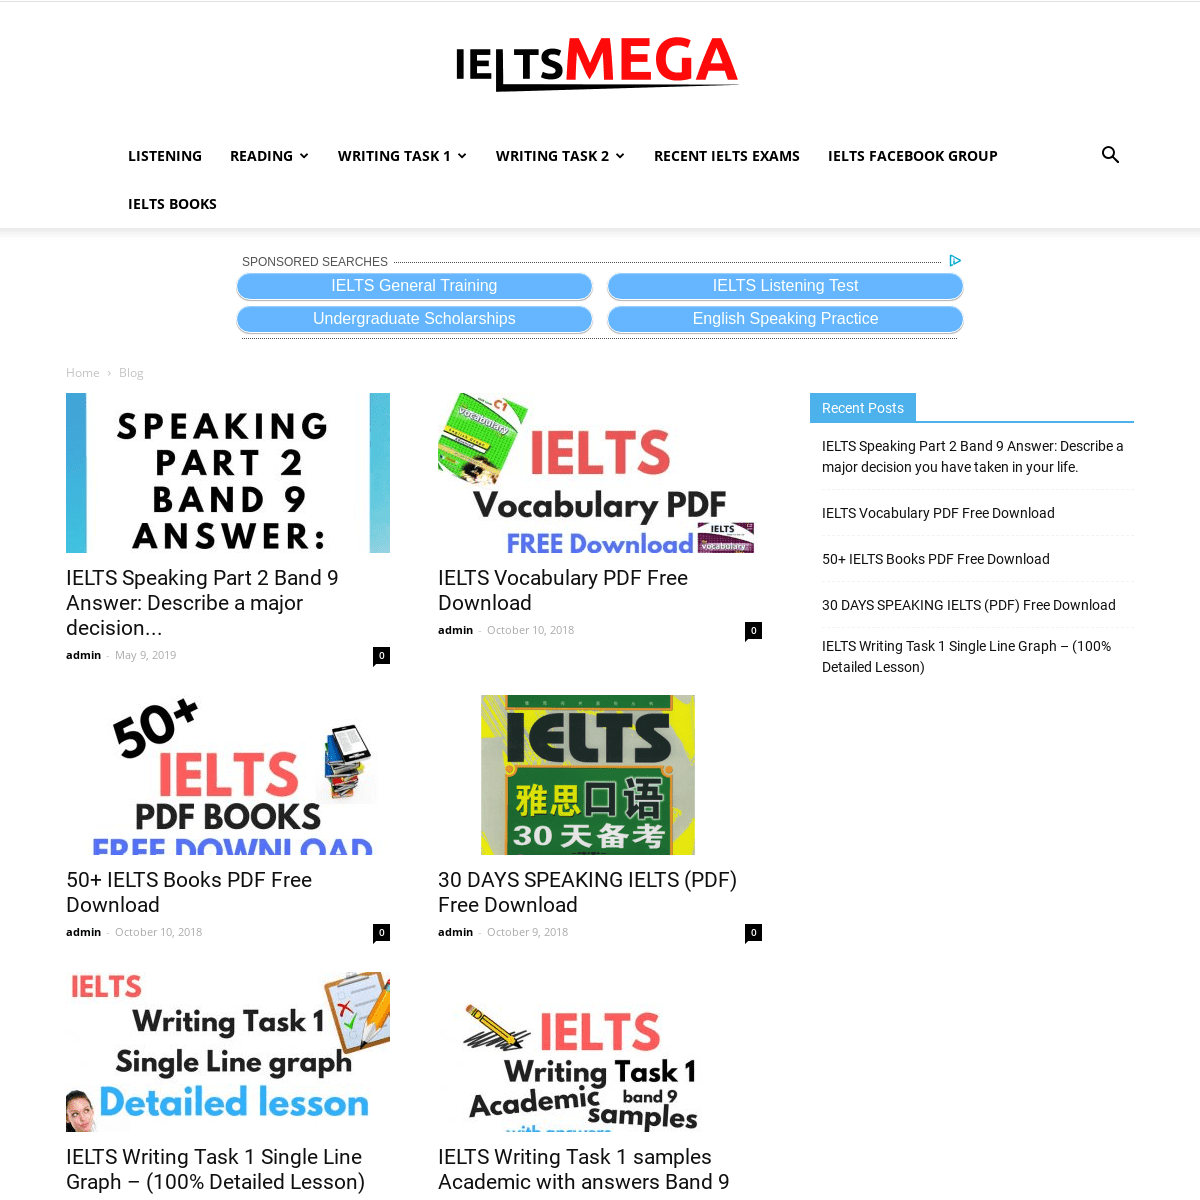 A complete backup of ieltsmega.com